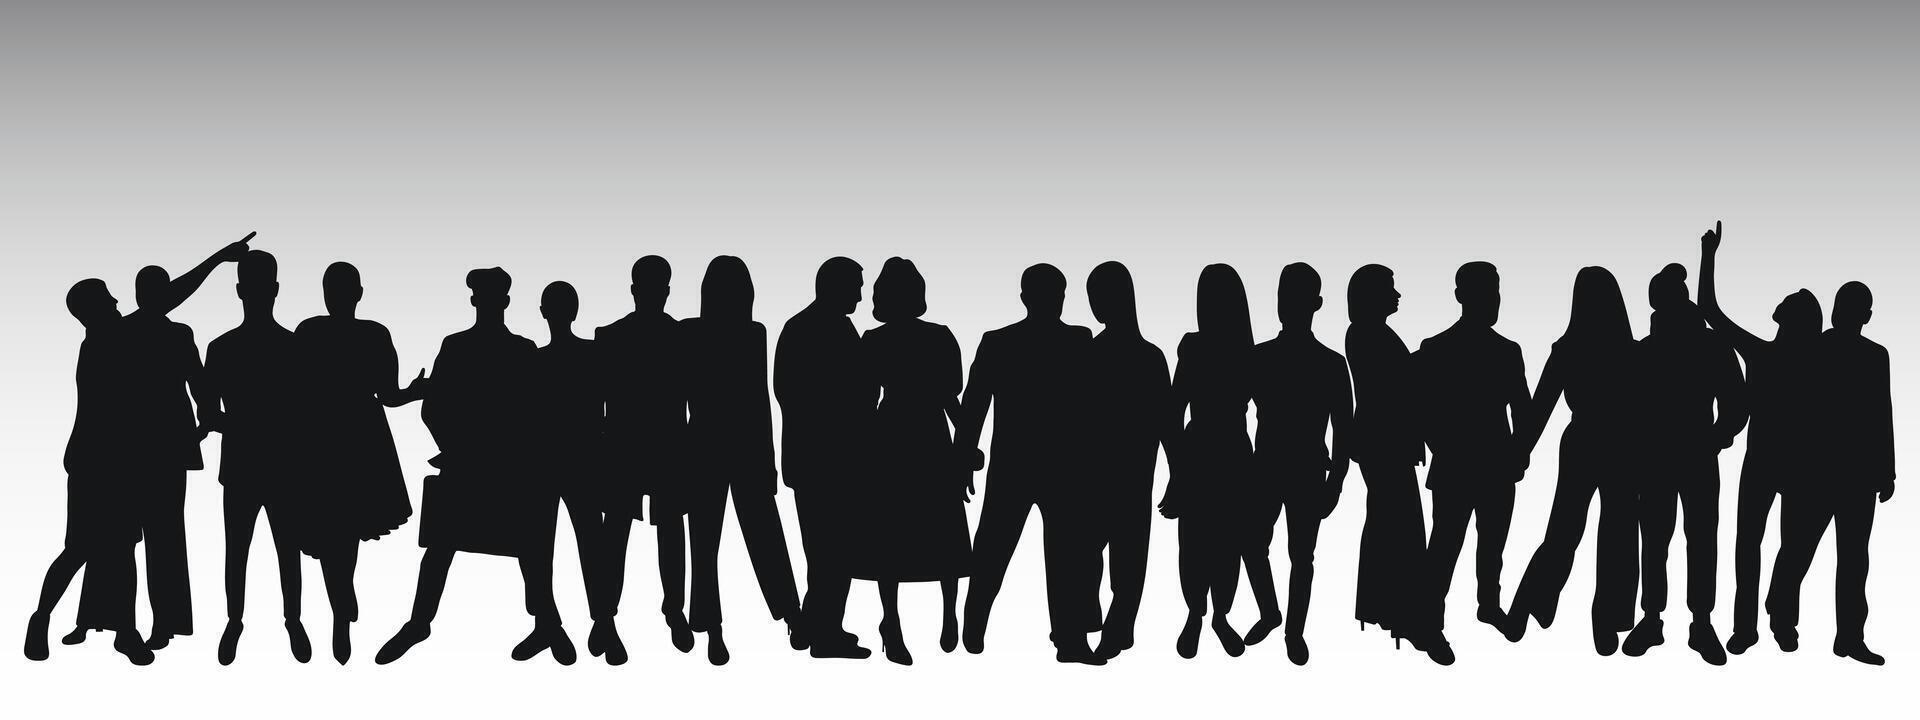 noir silhouette de Jeune des couples de les mecs et filles, foule, groupe, équipe, groupe, isolé vecteur